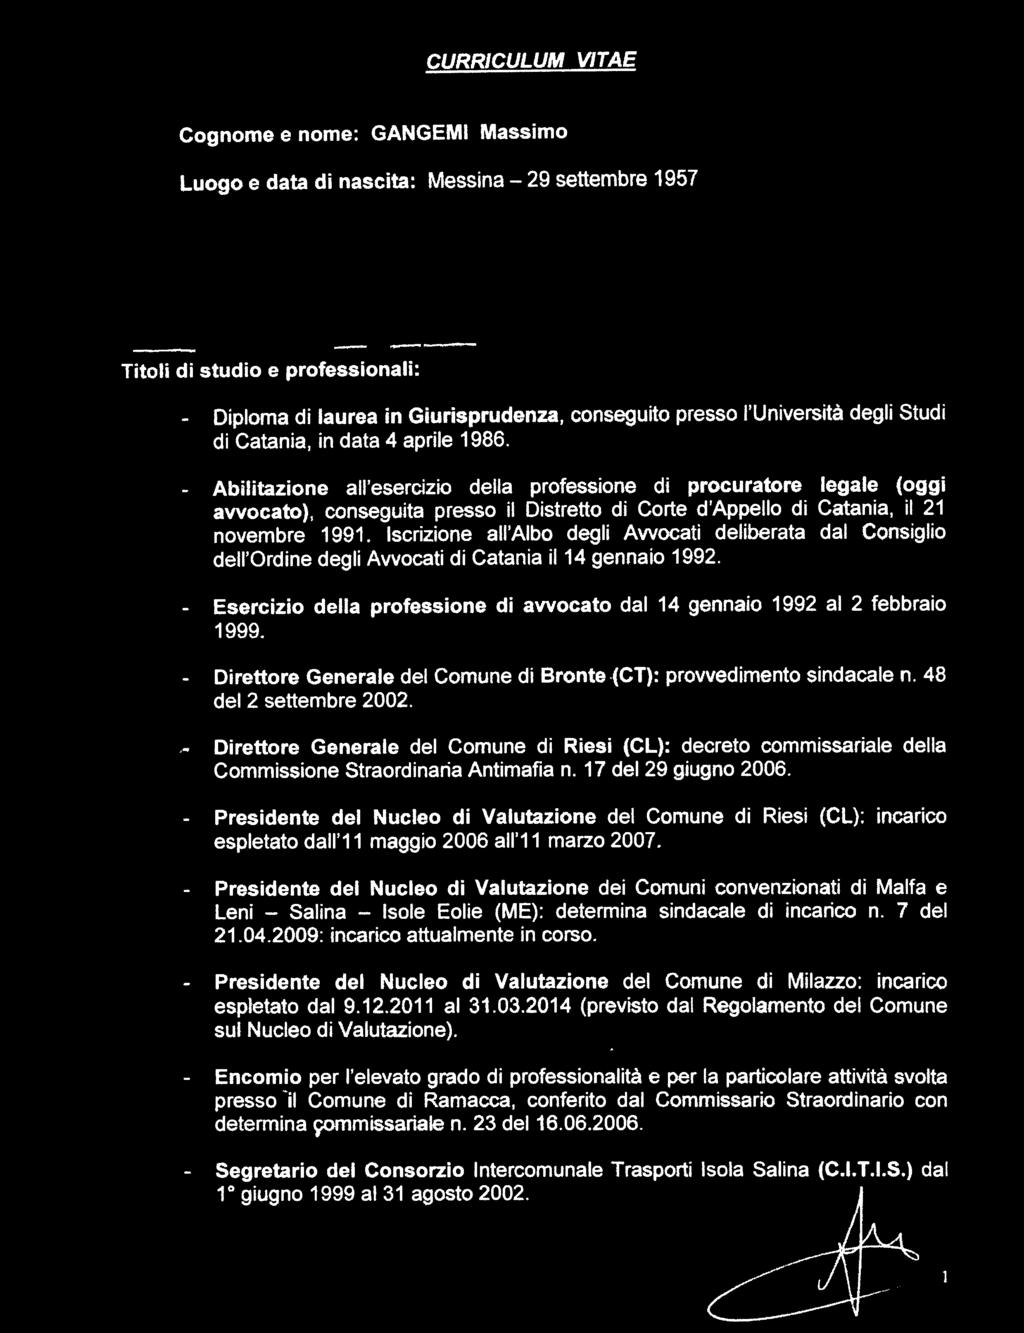 - Abilitazione all'esercizio della professione di procuratore legale (oggi avvocato), conseguita presso il Distretto dj Corte d'appello di Catania, il 21 novembre 1991.